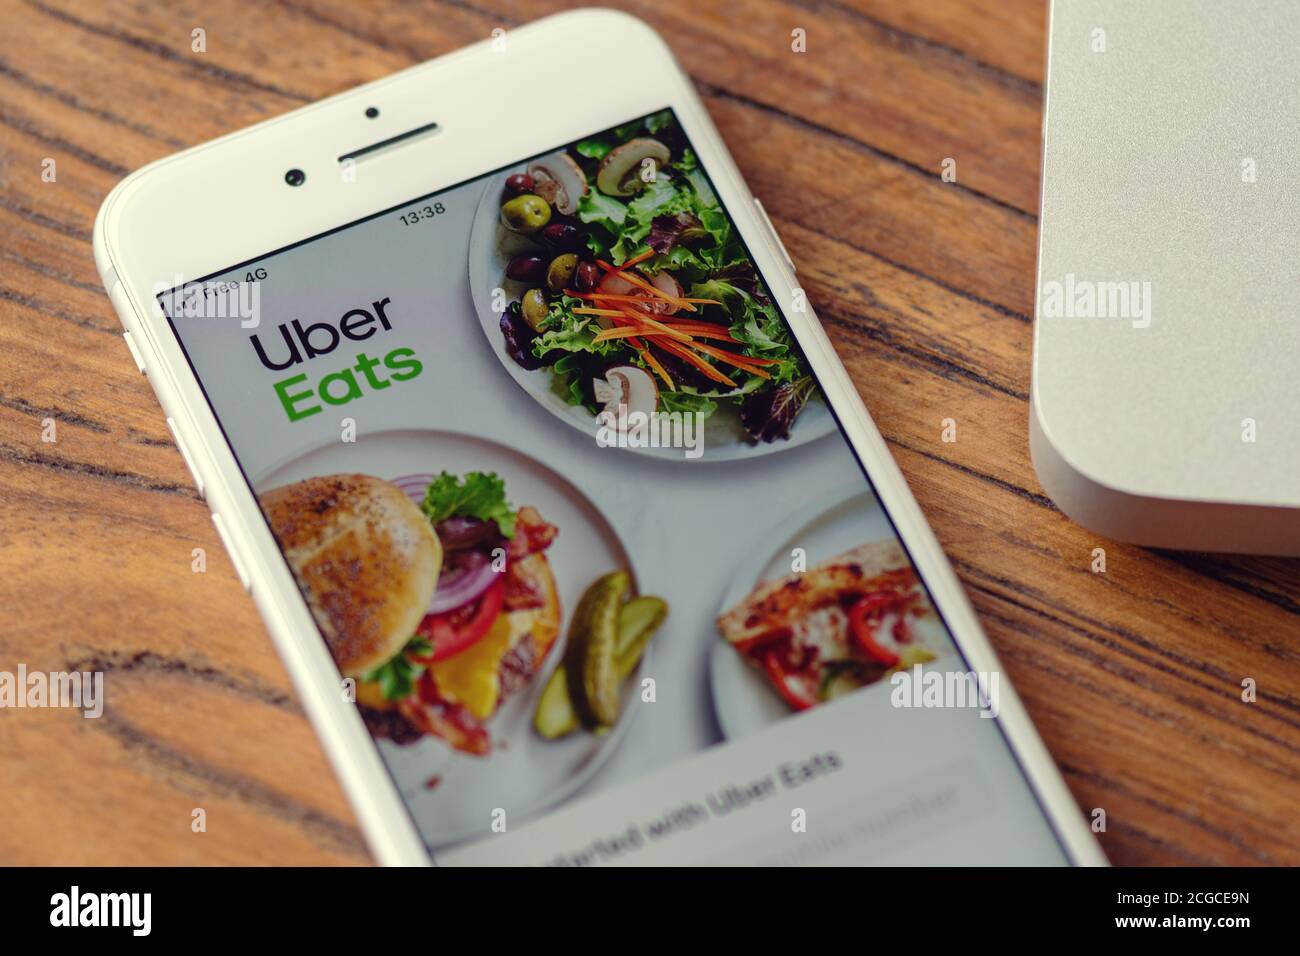 Guilherand-Granges, France - 04 novembre 2019. Apple iPhone 8 avec plate-forme de commande et de livraison de nourriture en ligne logo de l'app: Uber Eats. Banque D'Images